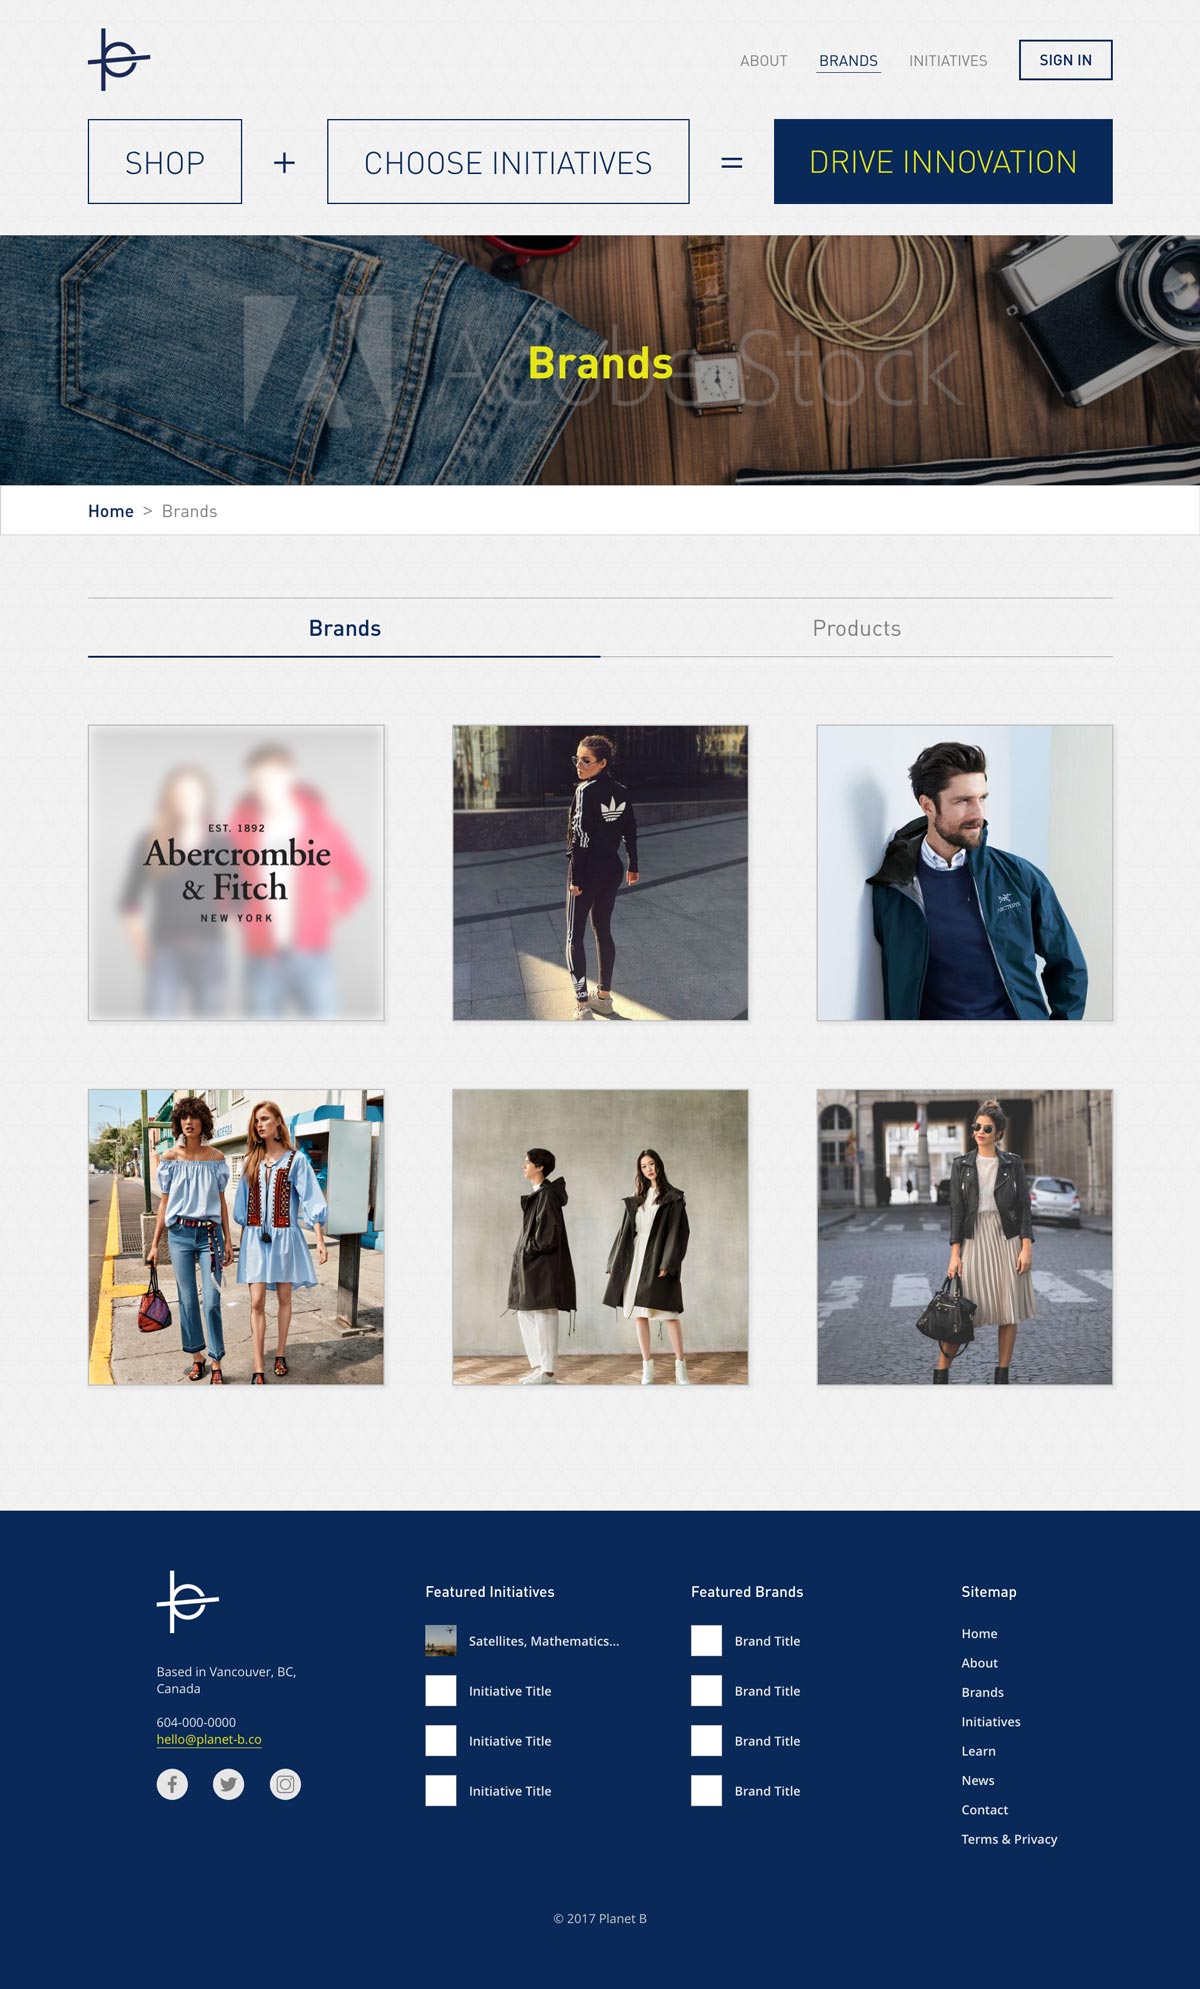 Planet B Website Design Mockup - Brands Page